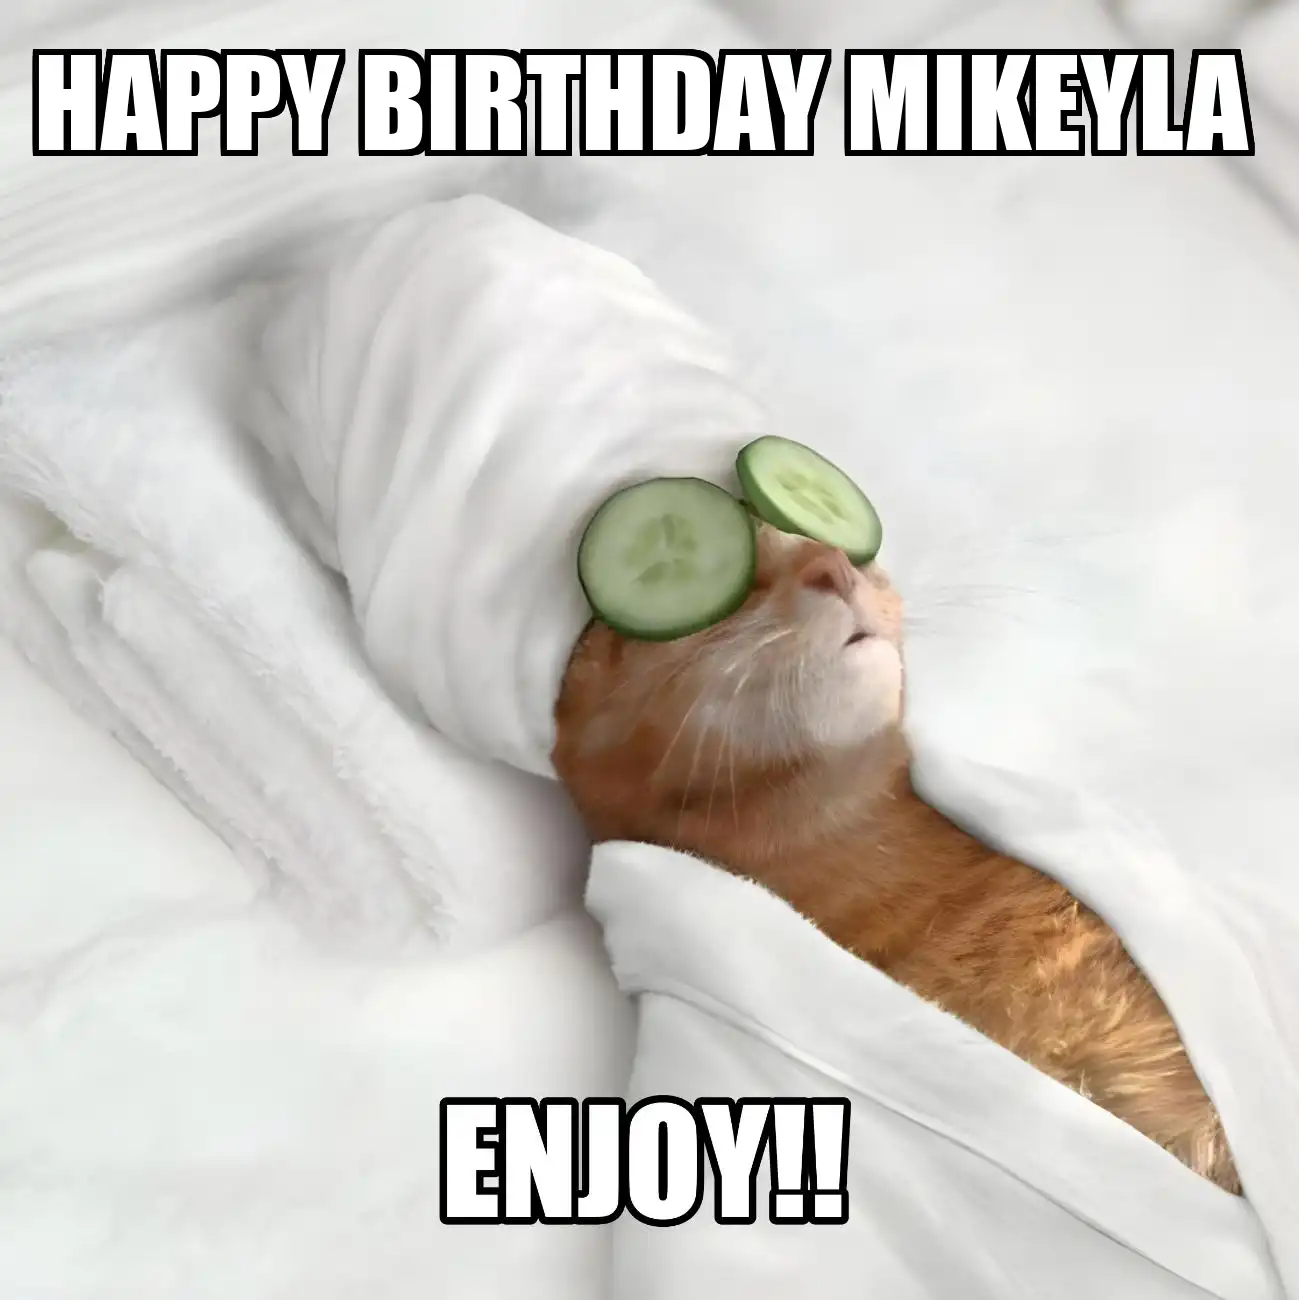 Happy Birthday Mikeyla Enjoy Cat Meme